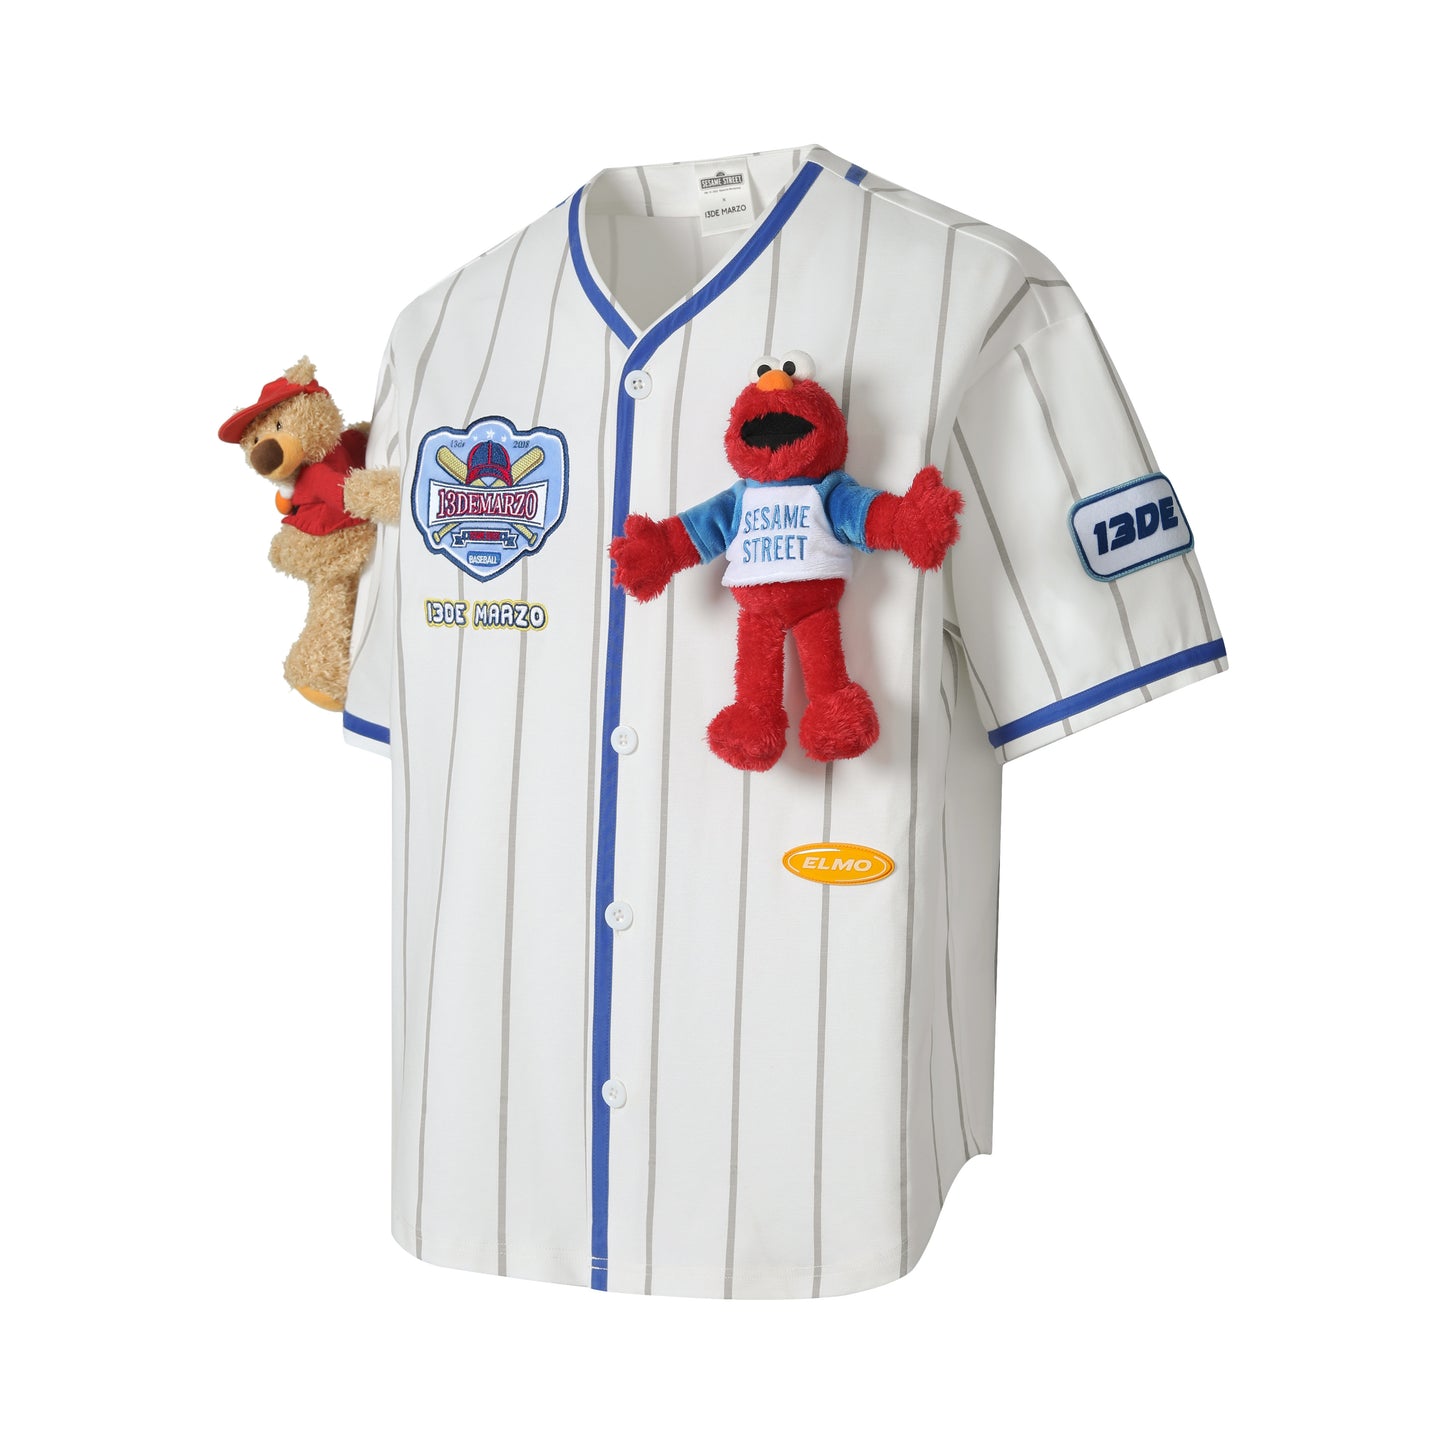 13DE MARZO Elmo Baseball Shirt